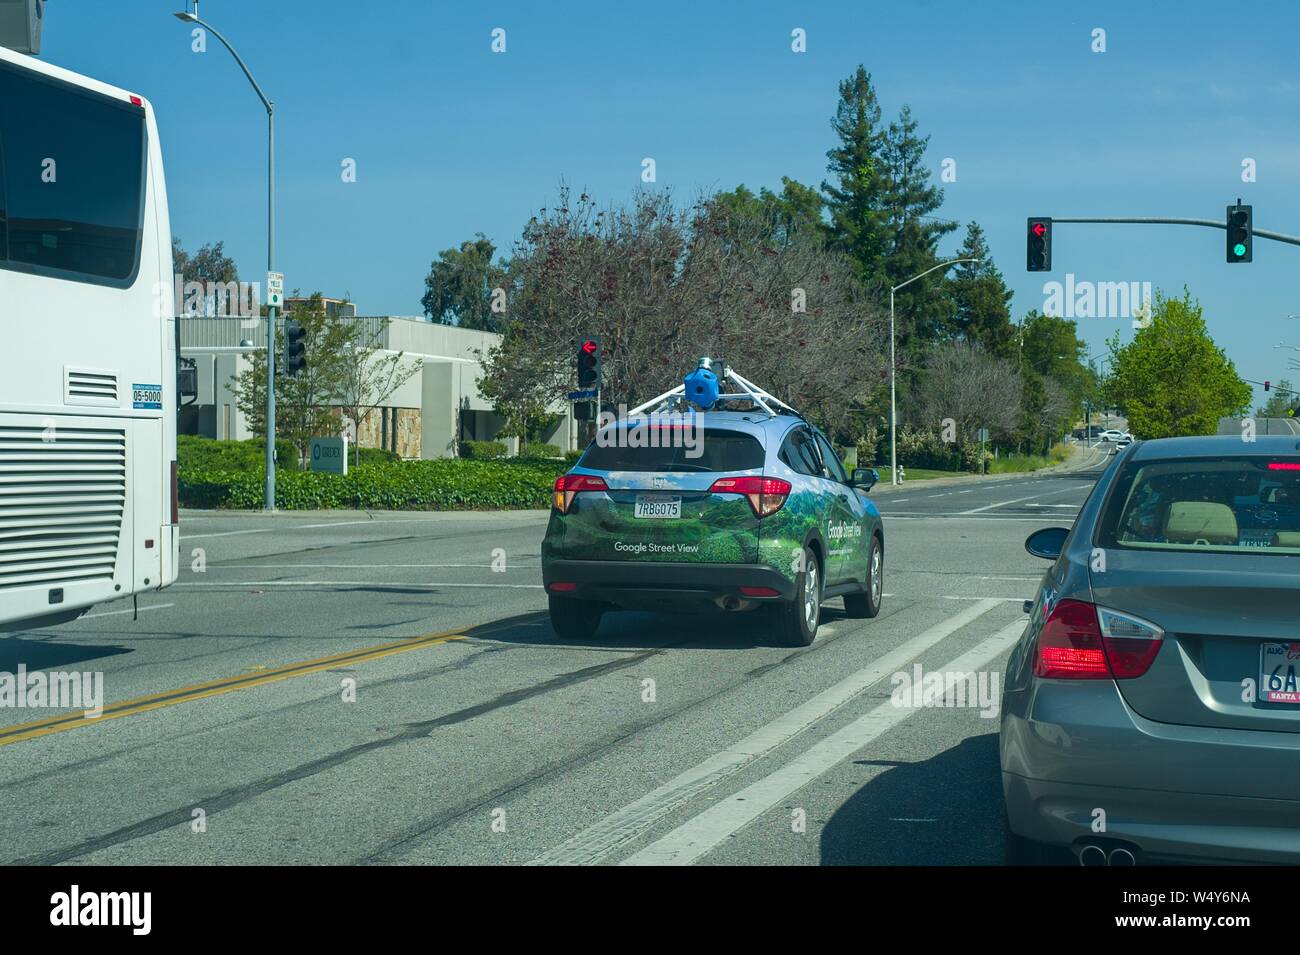 Google Street View Fahrzeug mit Ausrüstung für die Aufnahme von 360 Grad Bilder für die Google Maps Plattform, die eine Straße im Silicon Valley, in Mountain View, Kalifornien, 3. Mai 2019. () Stockfoto